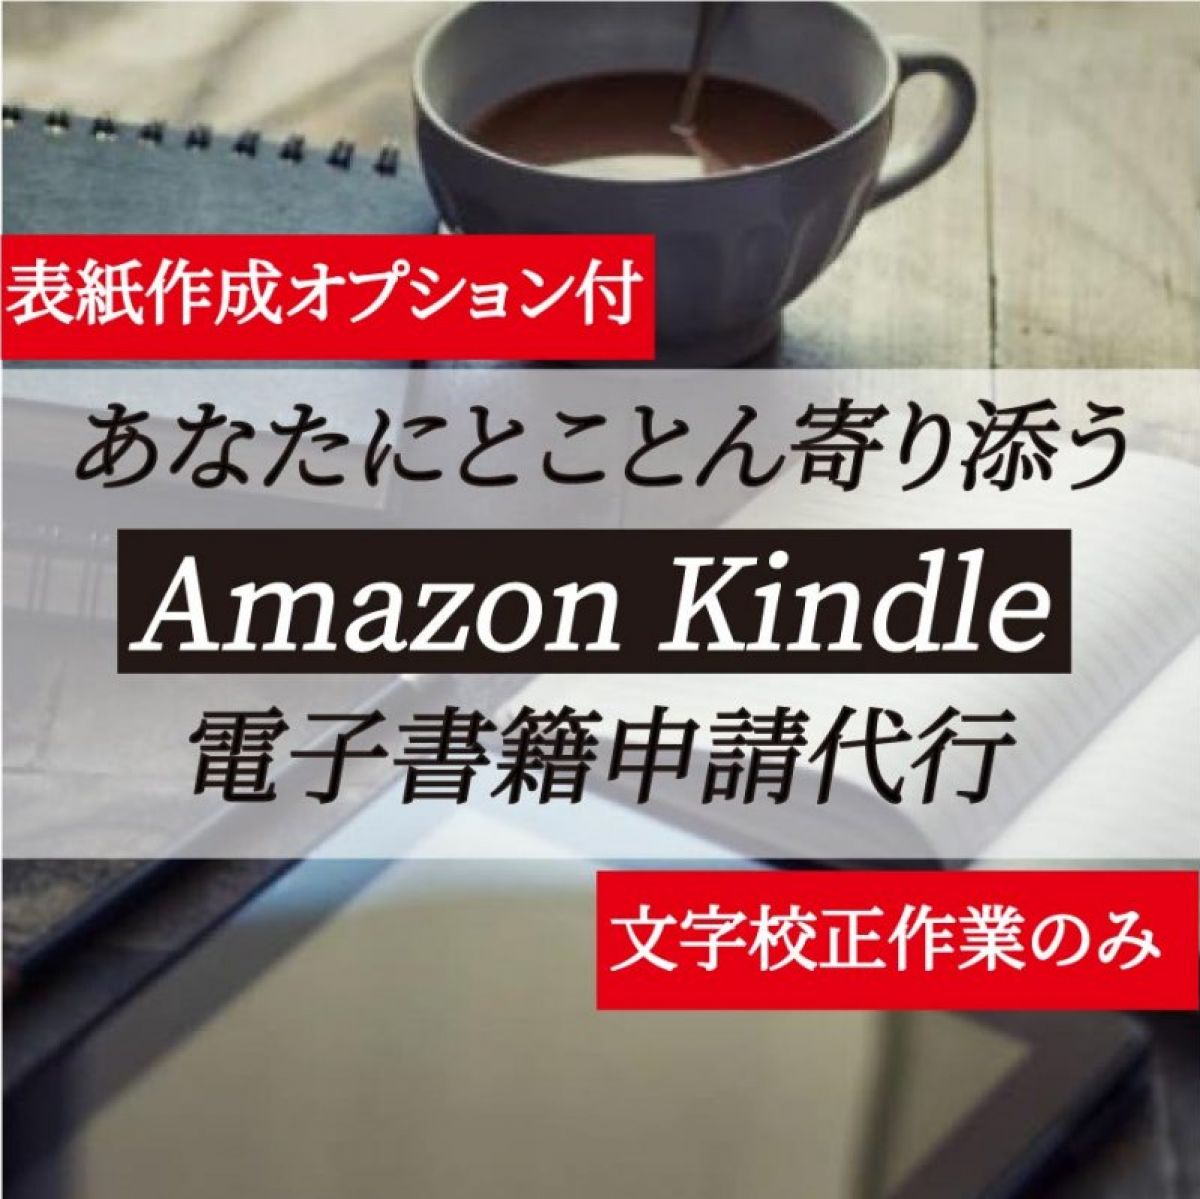 あなたにとことん寄り添う Amazon Kindle 電子書籍申請代行（表紙作成オプションあり）